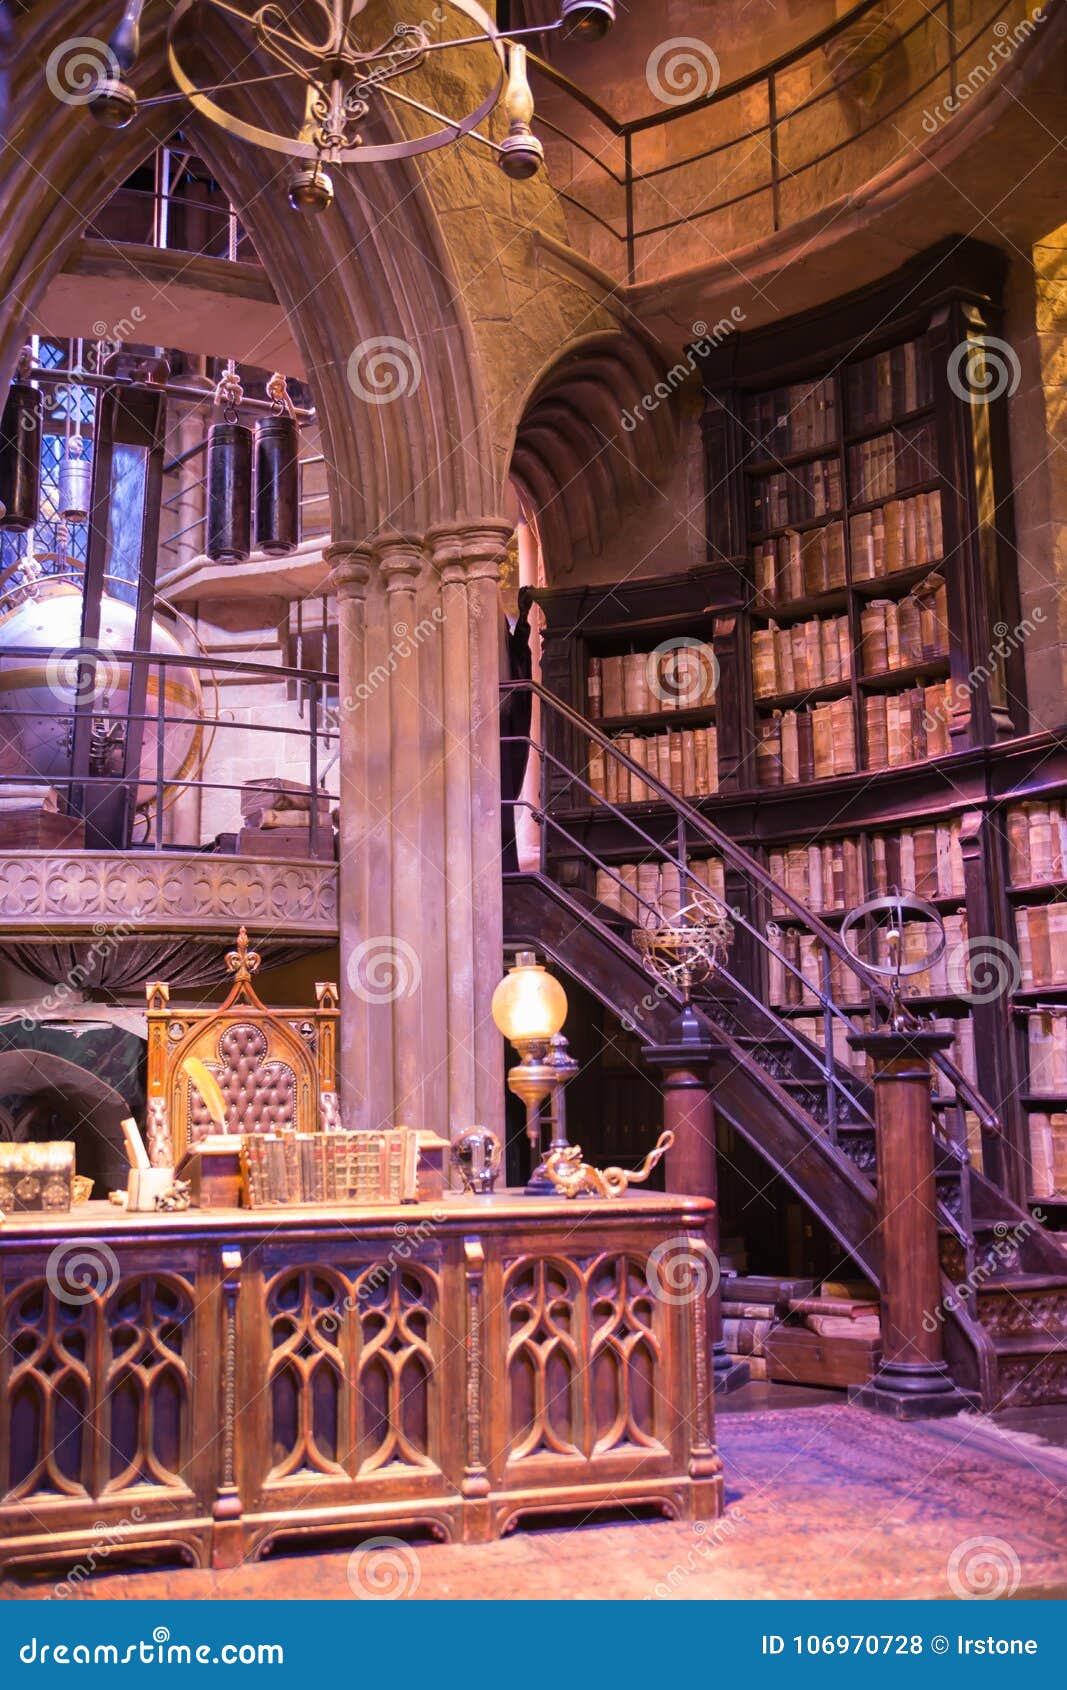 Interior Of Dumbledore Office And Professor S Costume